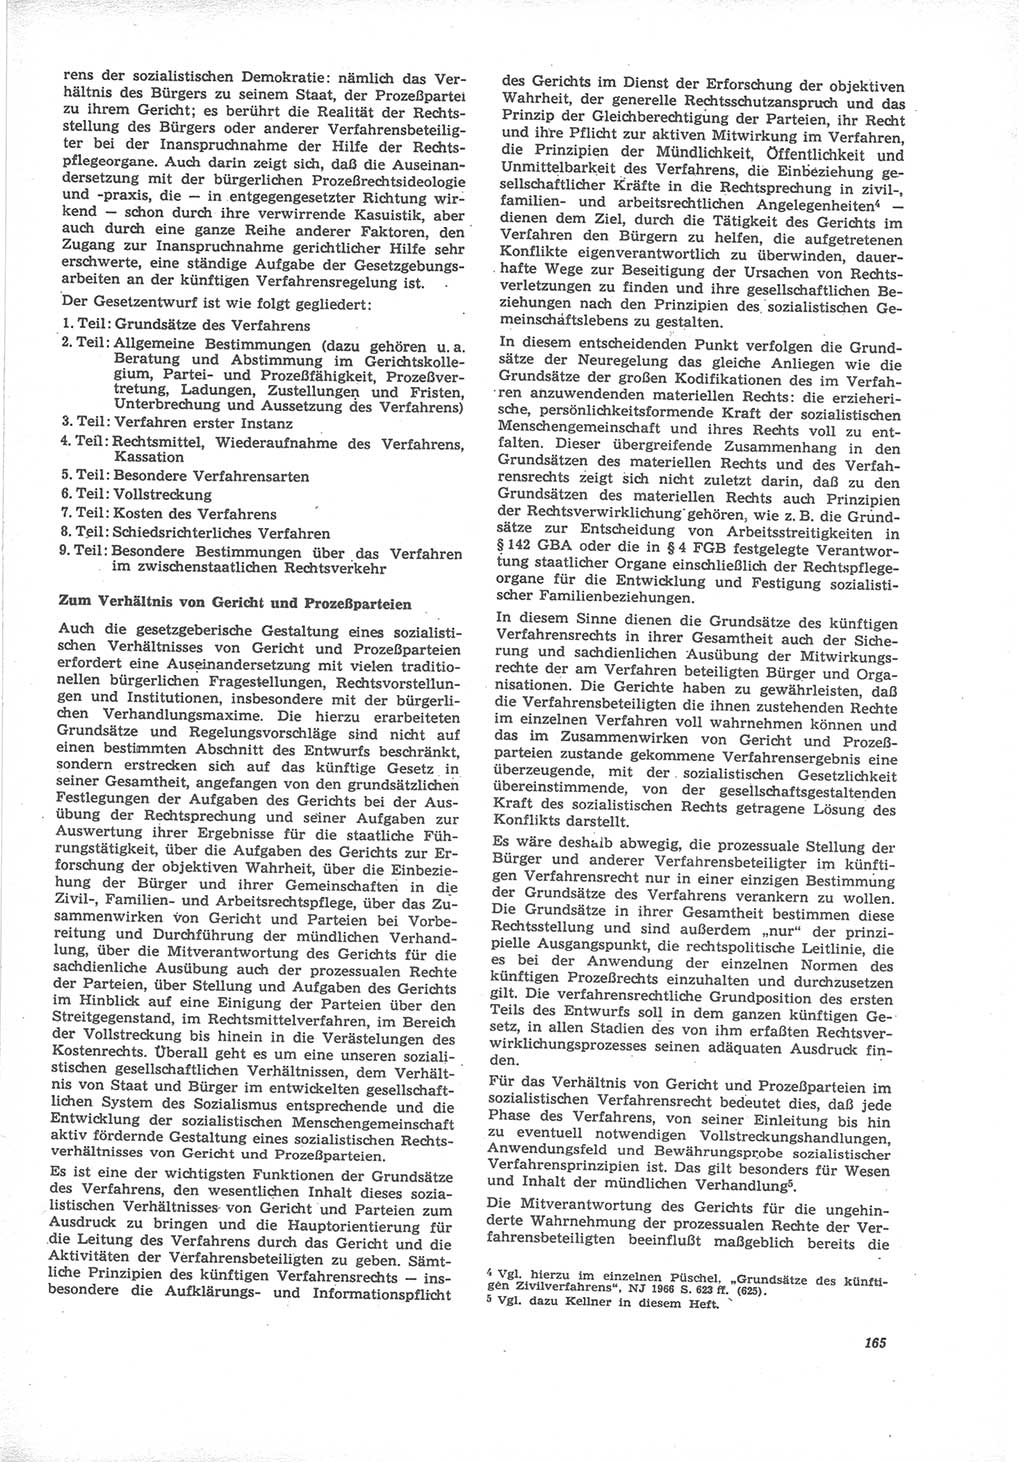 Neue Justiz (NJ), Zeitschrift für Recht und Rechtswissenschaft [Deutsche Demokratische Republik (DDR)], 24. Jahrgang 1970, Seite 165 (NJ DDR 1970, S. 165)